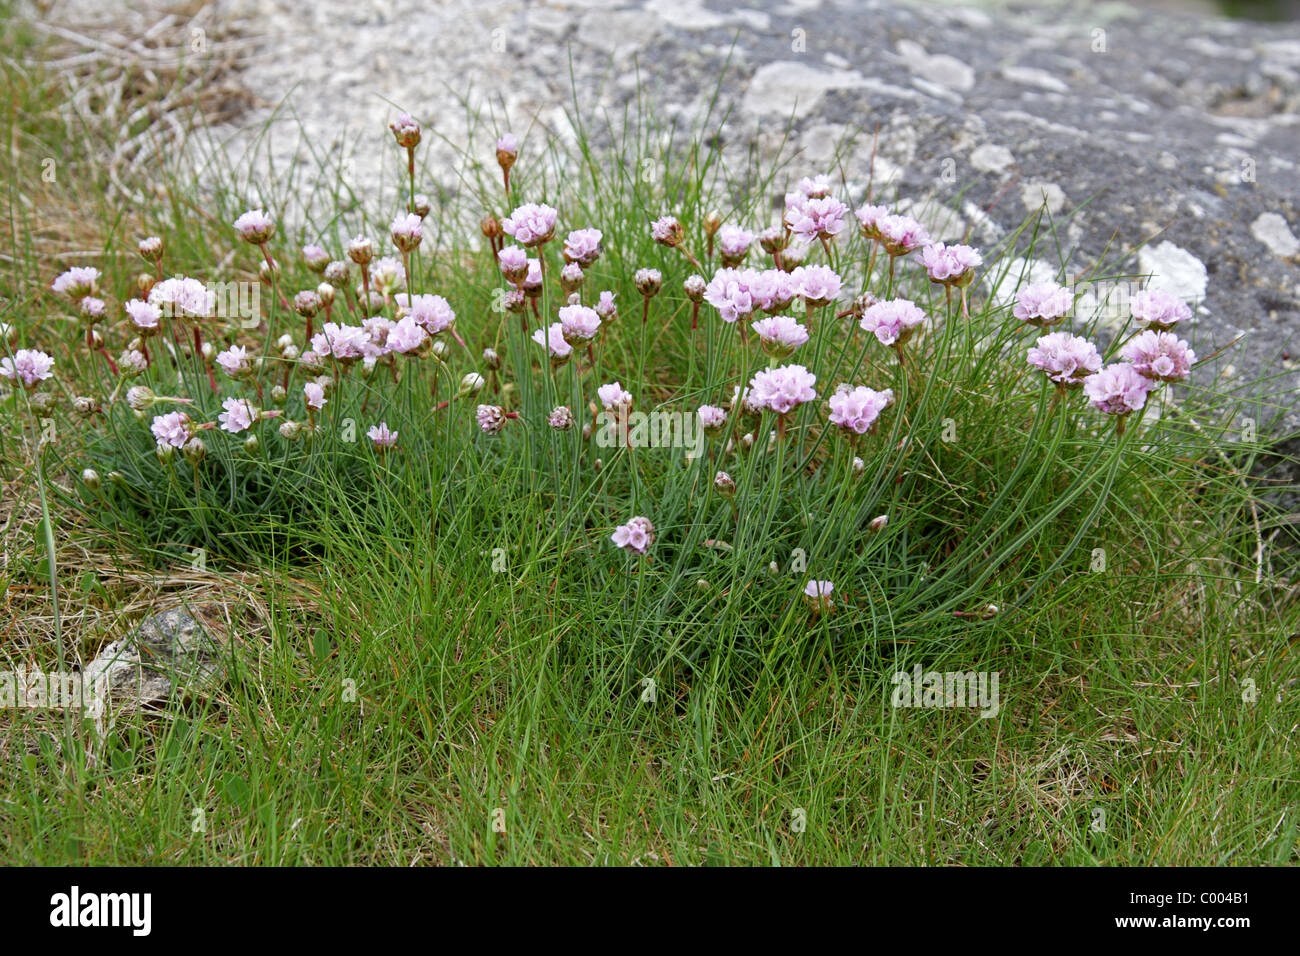 Thrift, Armeria maritima ssp elongata, Plumbaginaceae. Stock Photo